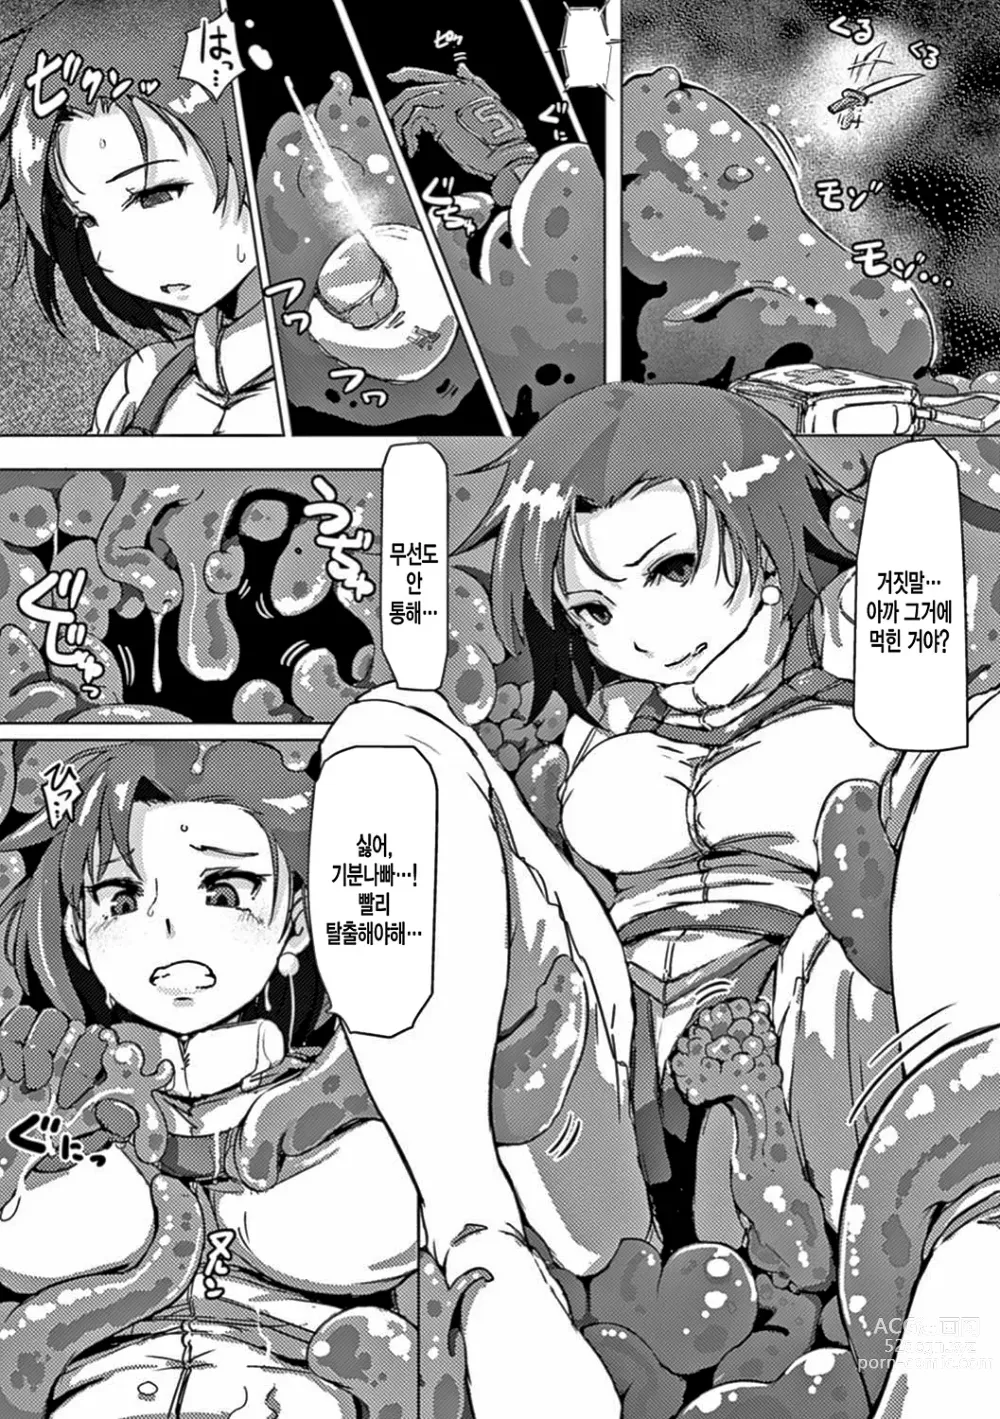 Page 160 of manga 더러운 정자로 자궁이 빵빵!